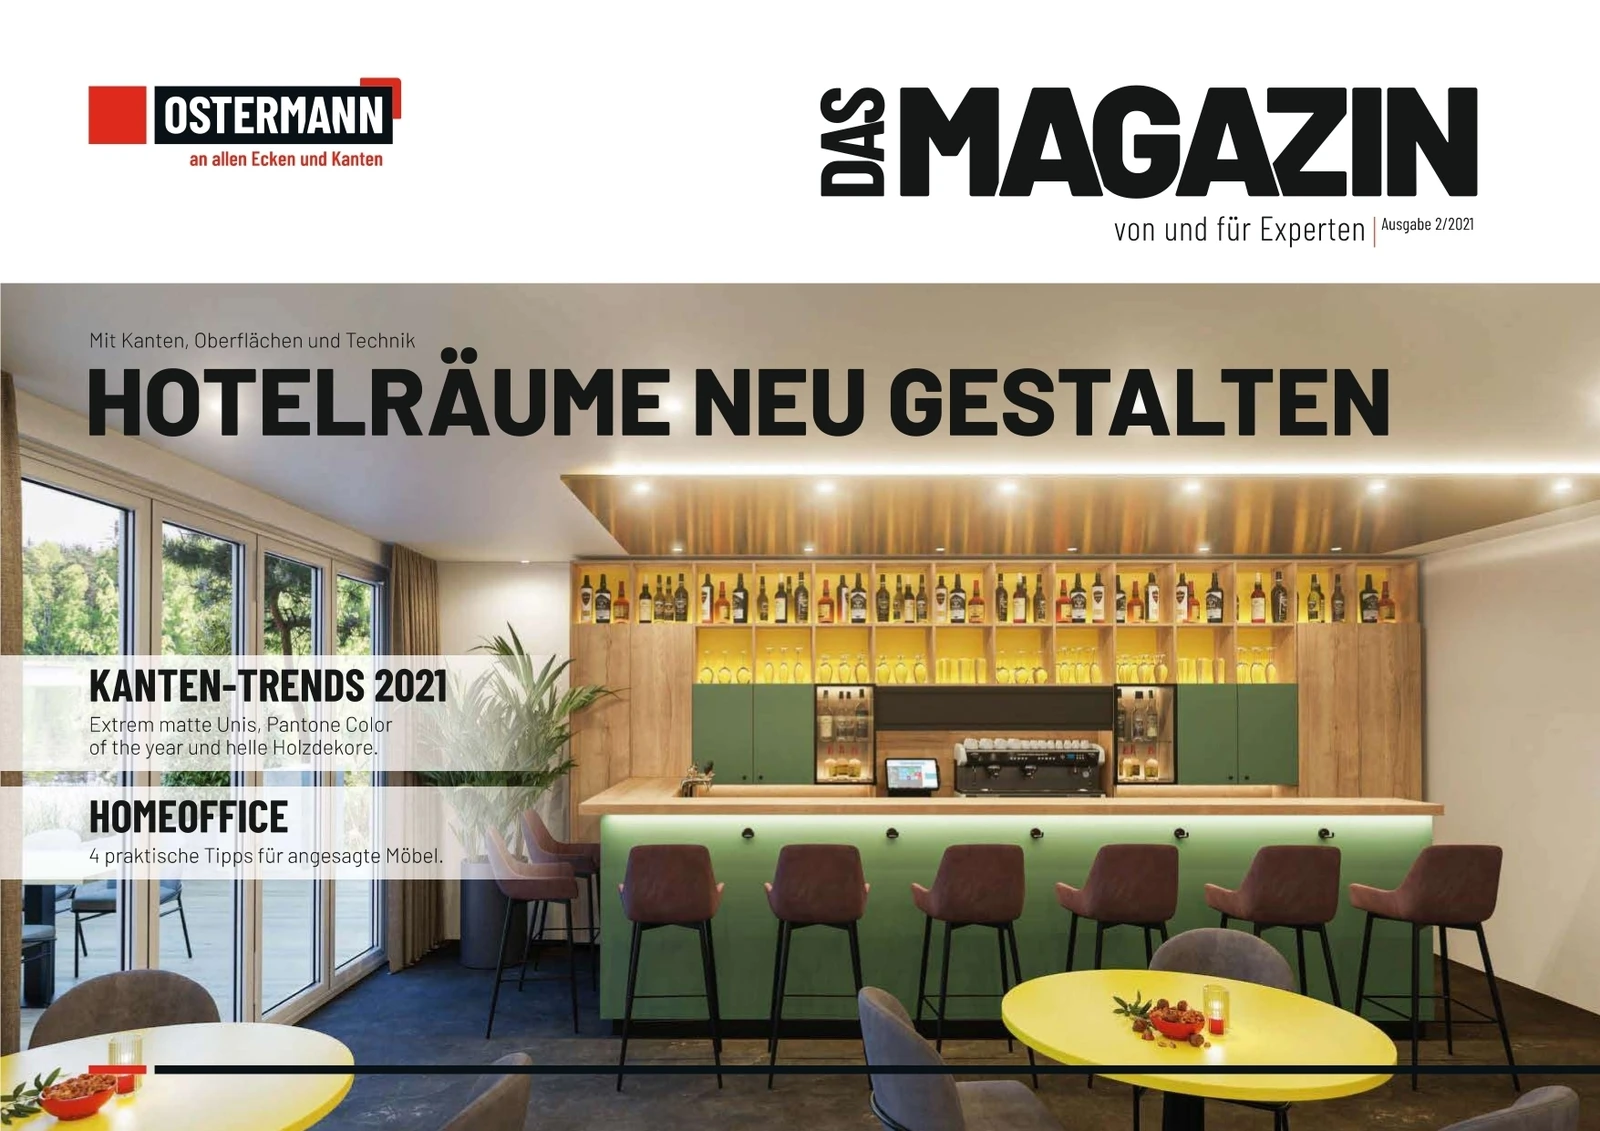 HOTELRÄUME NEU GESTALTEN - Das Magazin 2 2021 Ostermann